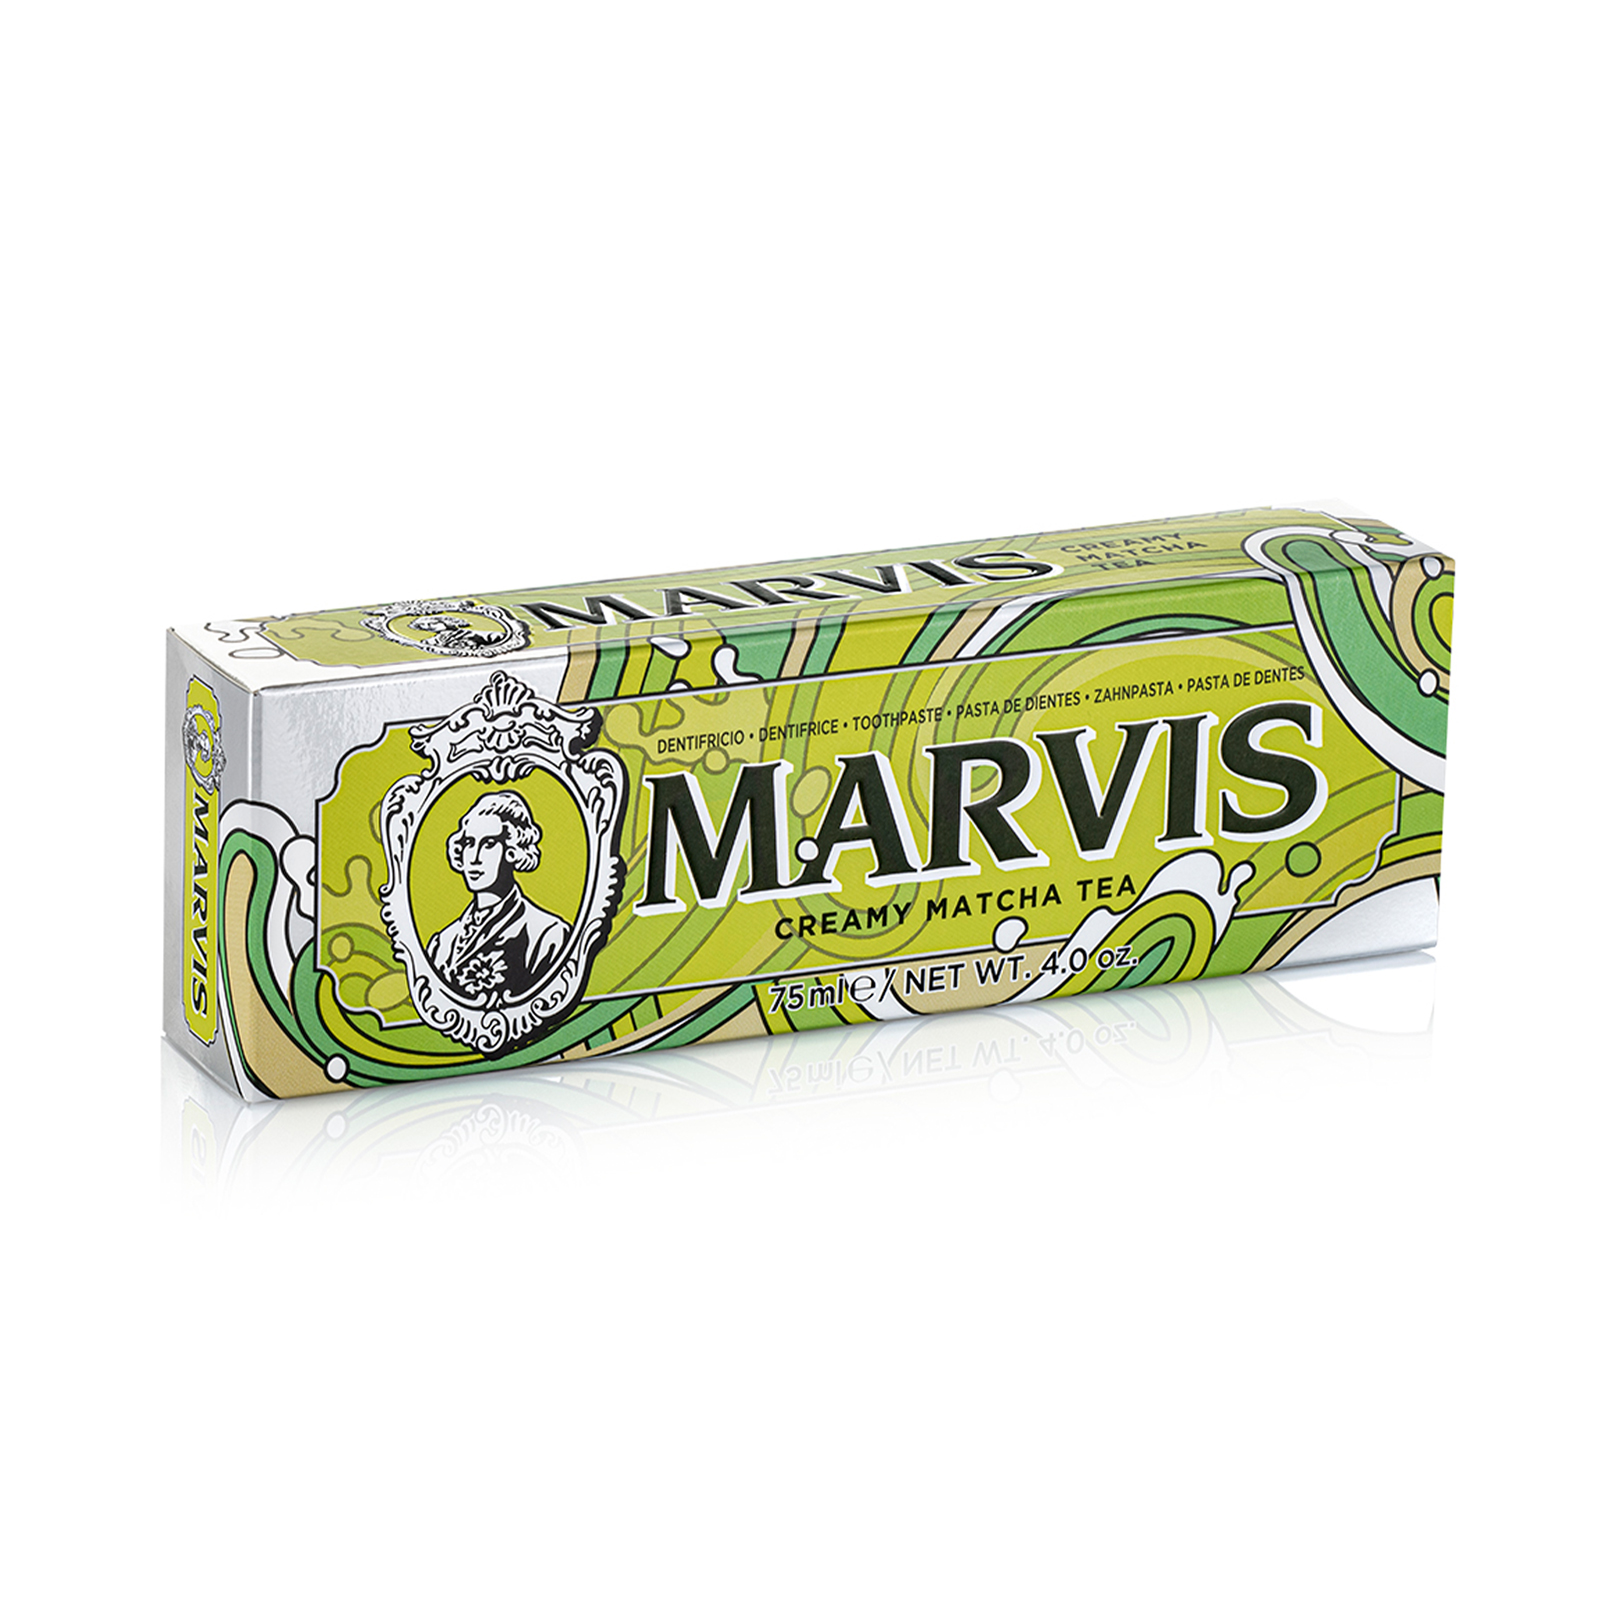 очищающие средства по уходу за полостью рта Marvis